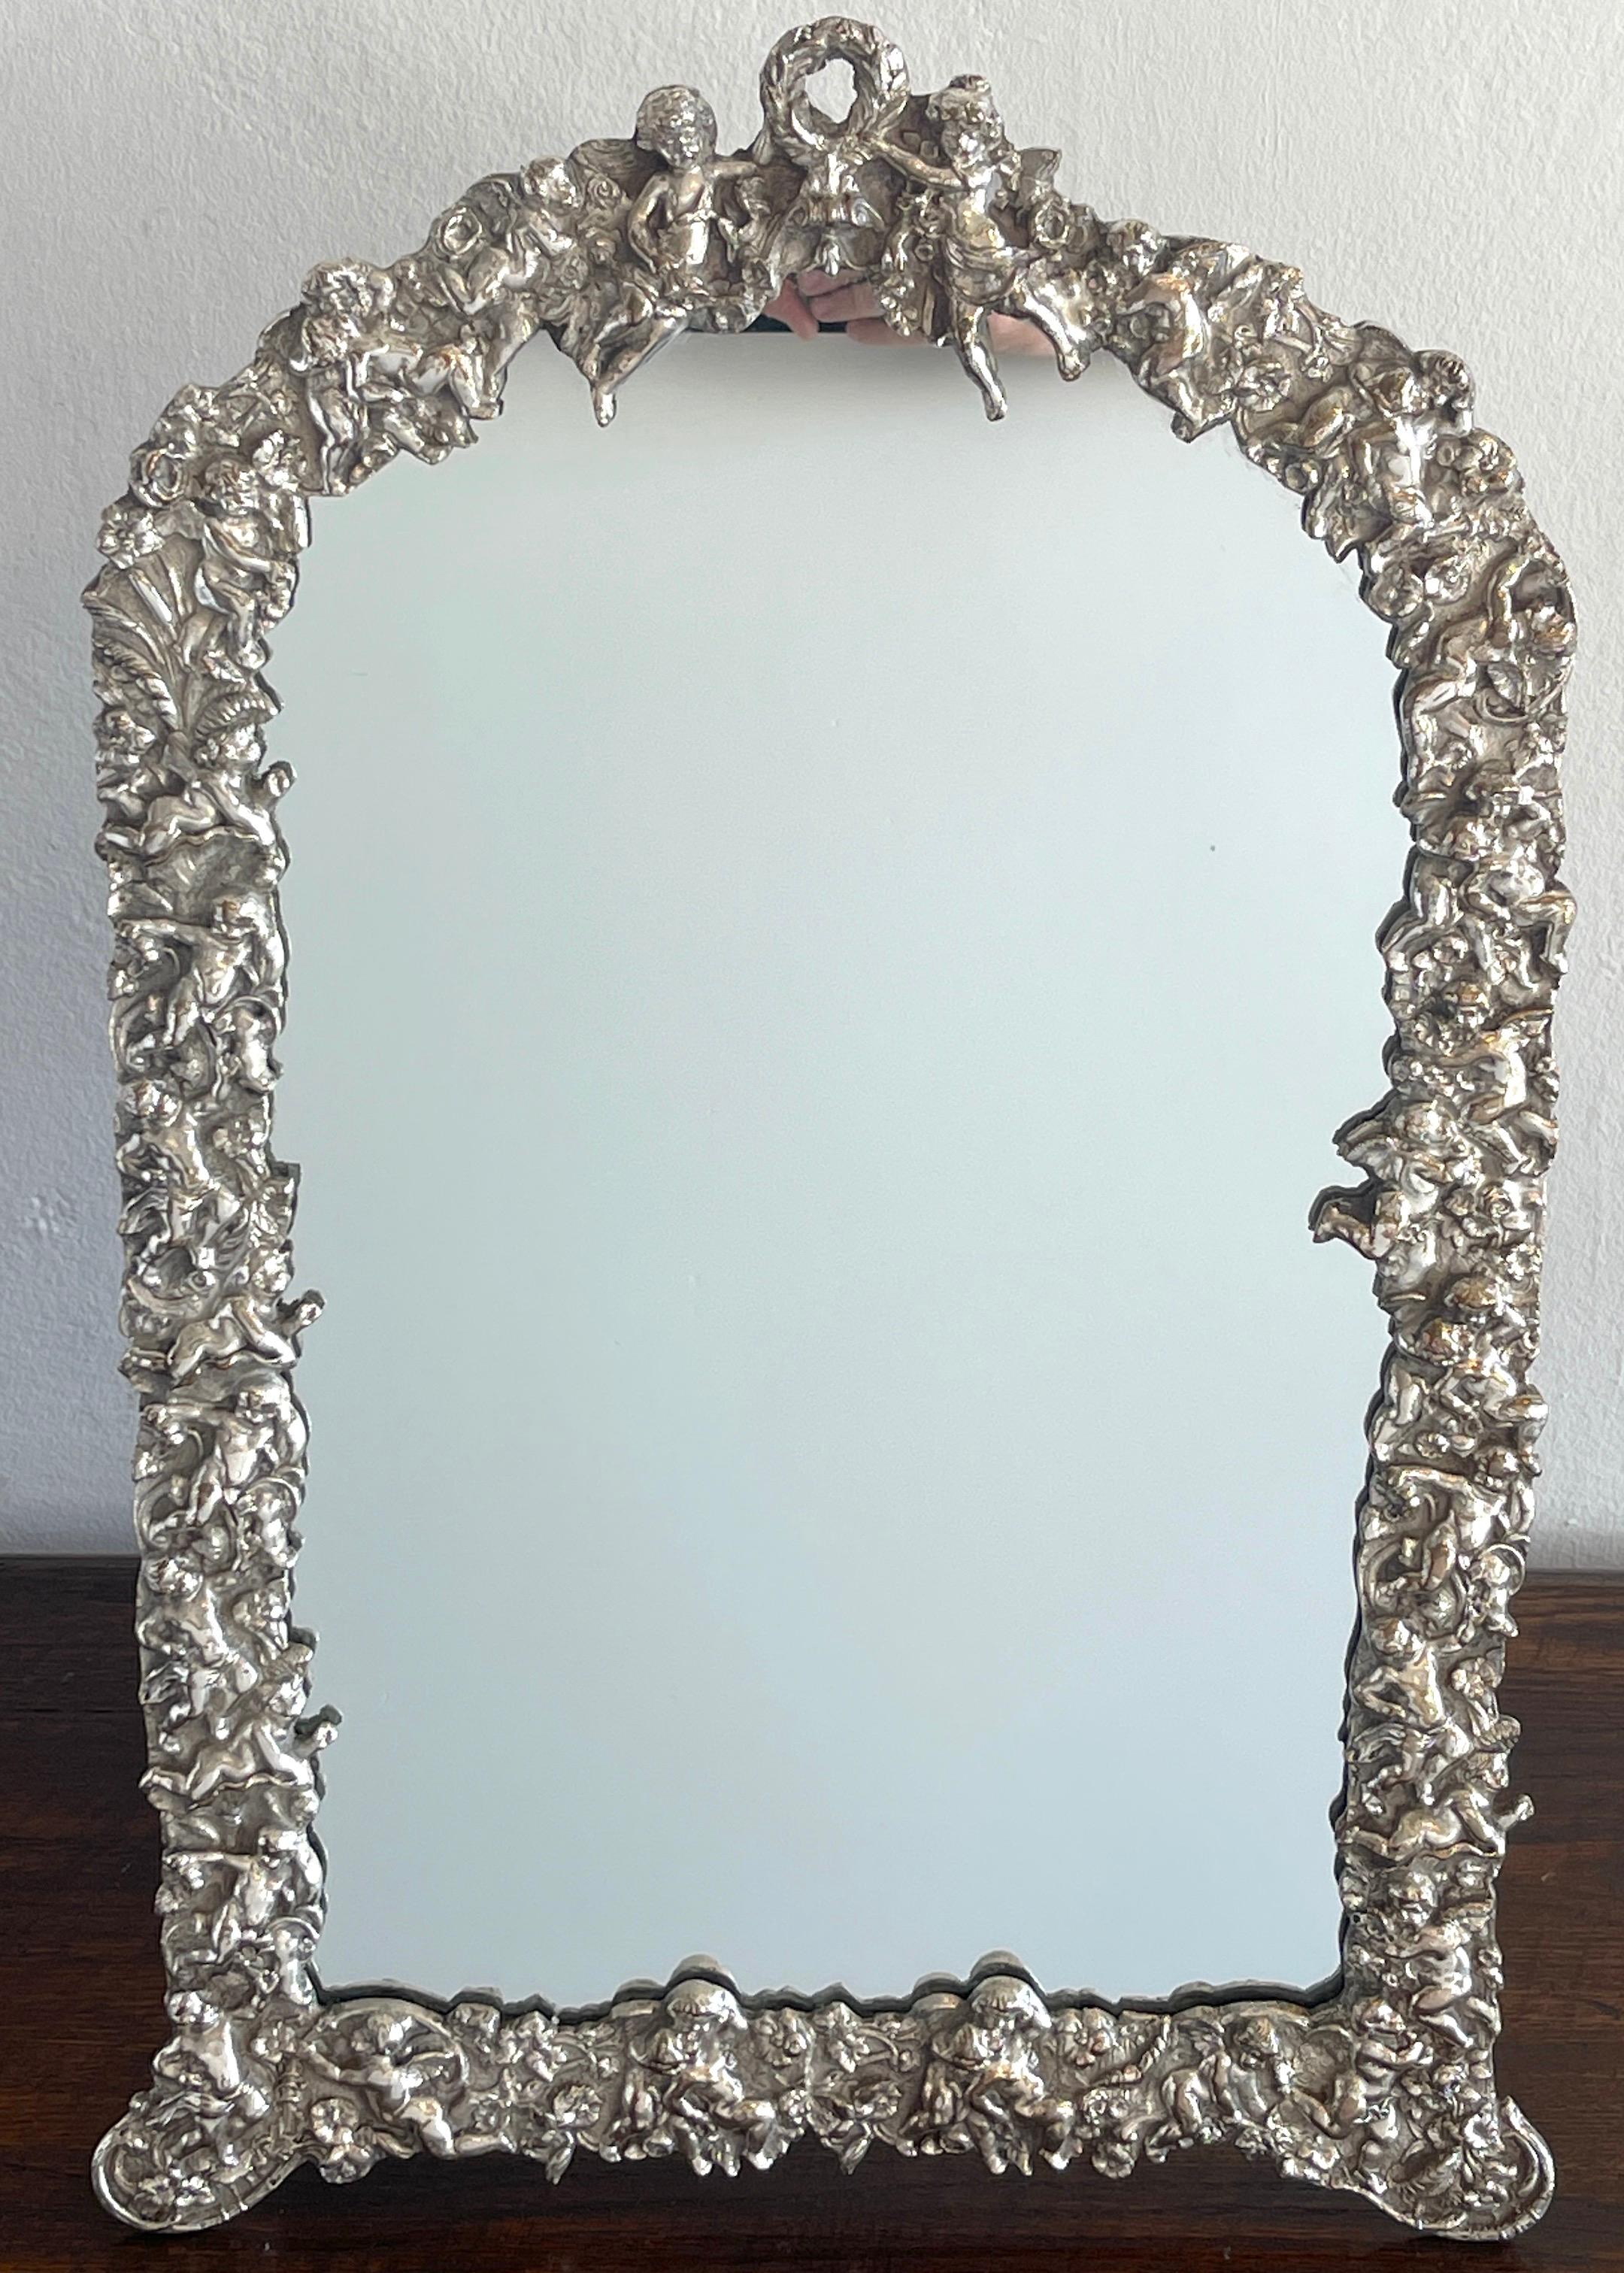 Französischer versilberter Frisierspiegel mit Puttenmotiv aus dem 19. Jahrhundert, mit einer durchgehenden Einfassung mit herumtollenden Putten. Der eingesetzte Spiegel misst 20